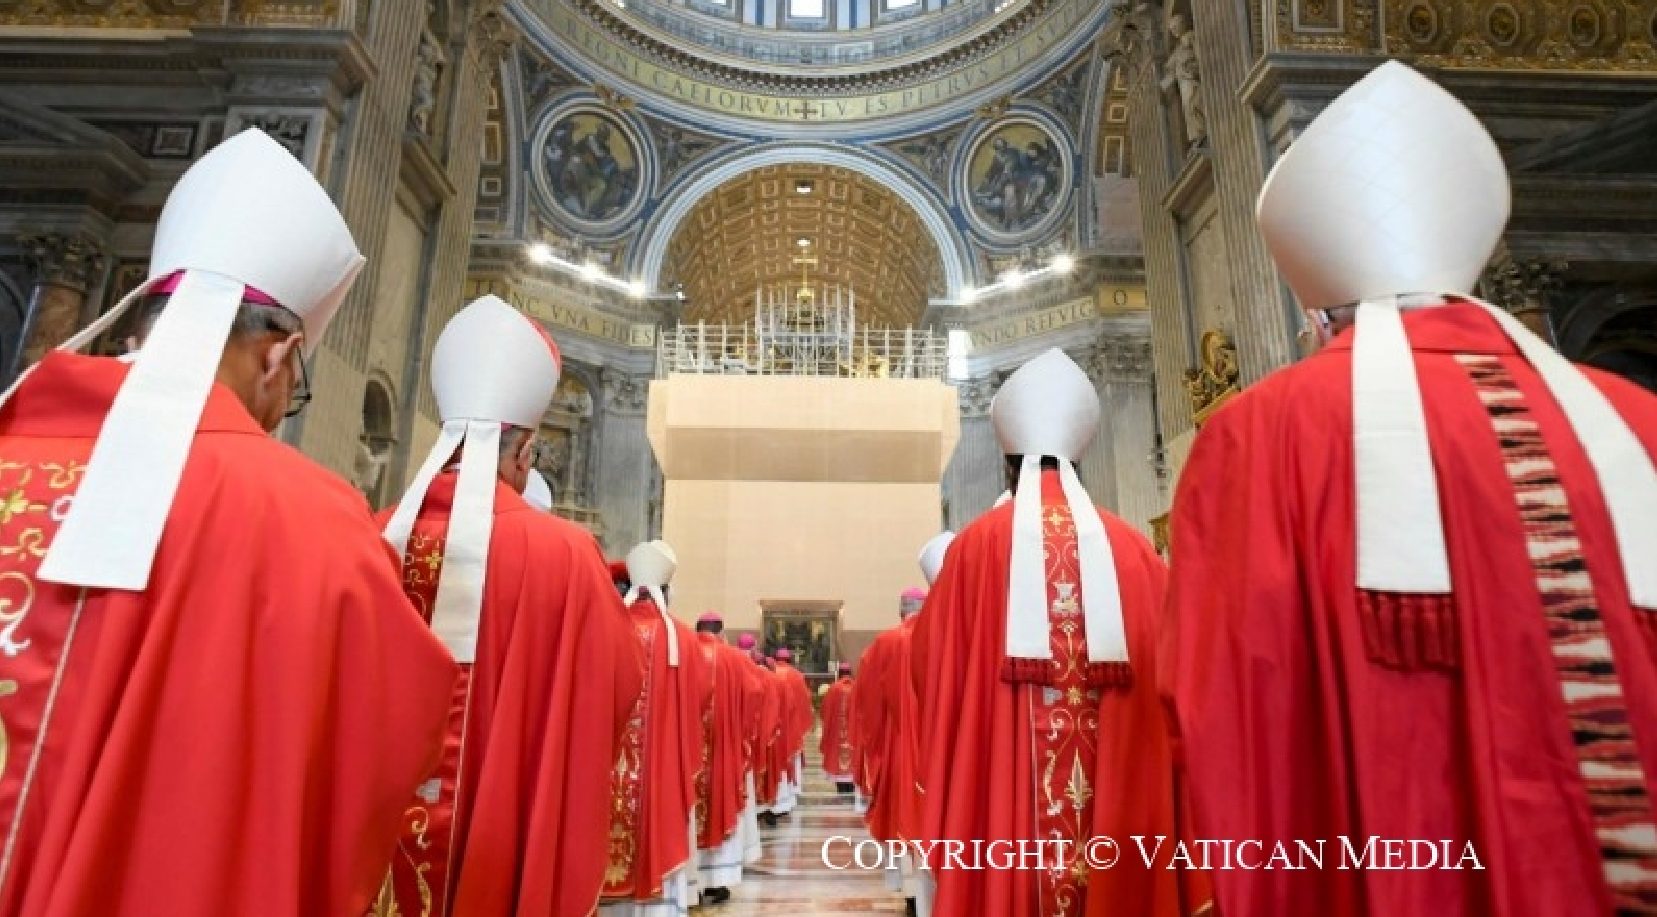 el Papa participó en la concelebración eucarística durante la cual 42 arzobispos metropolitanos recibieron el palio.